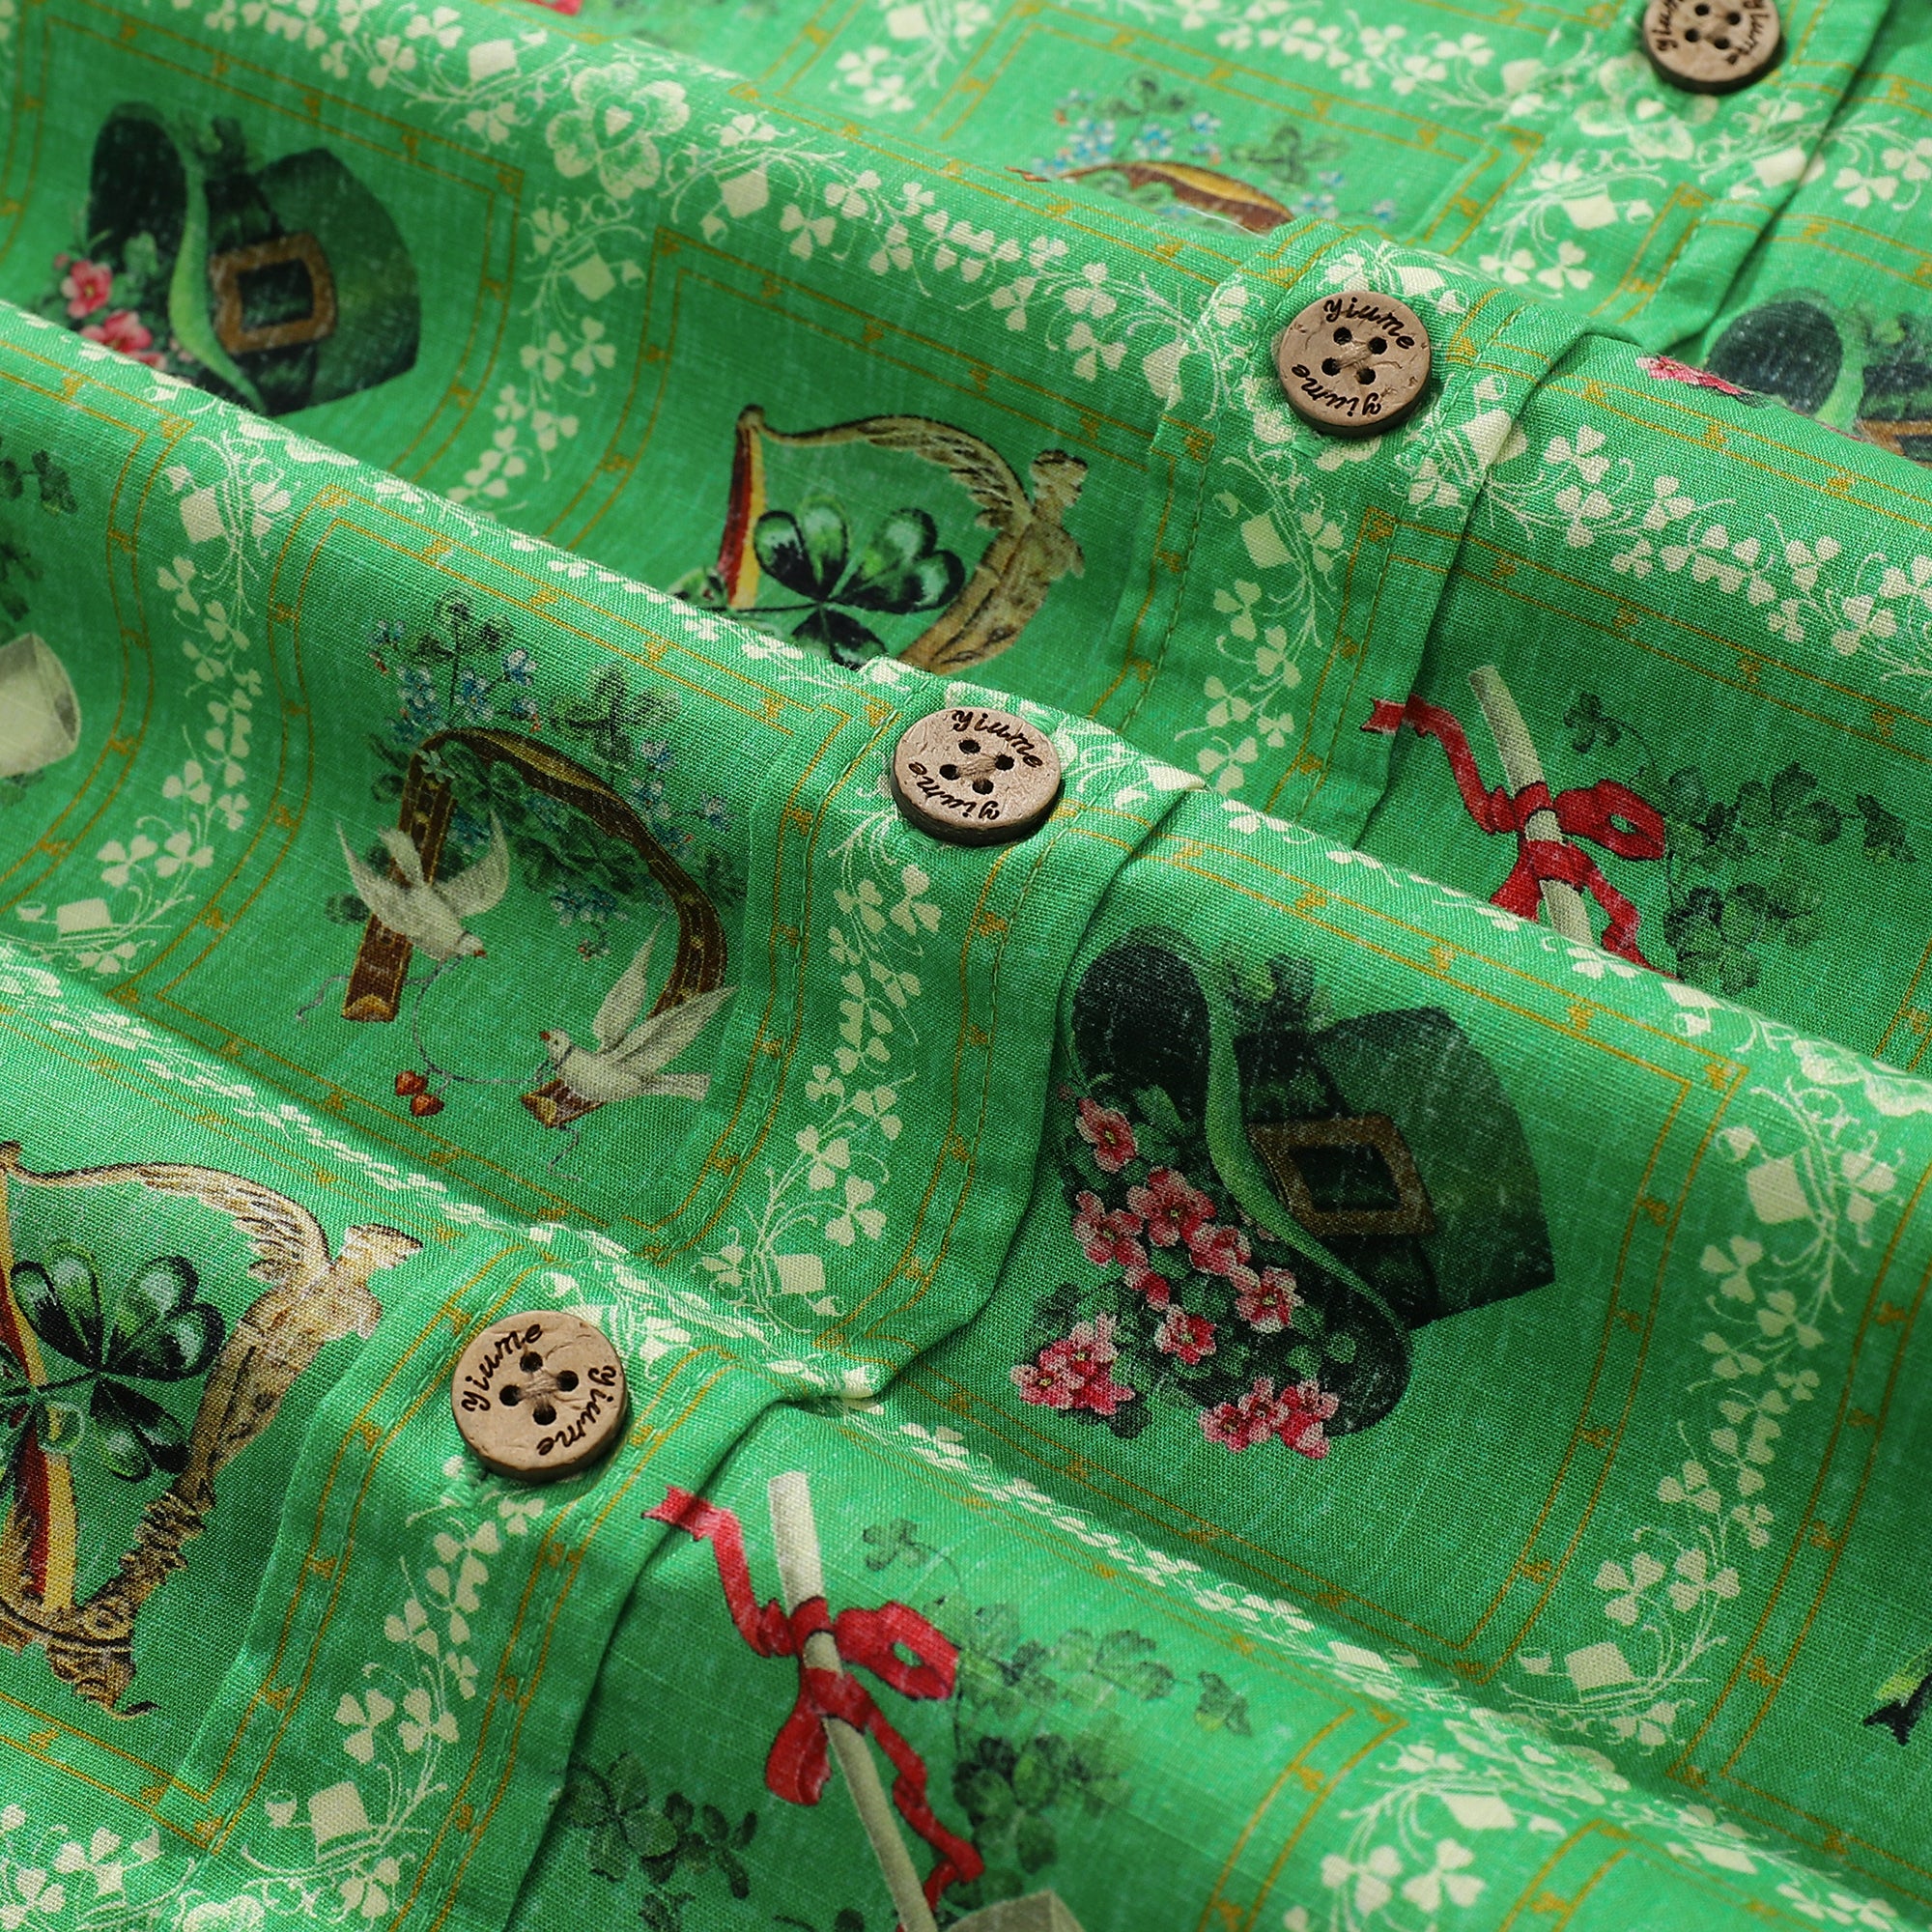 Hawaiihemd für Herren, grünes, kurzärmliges Baumwollhemd zum St. Patrick's Day